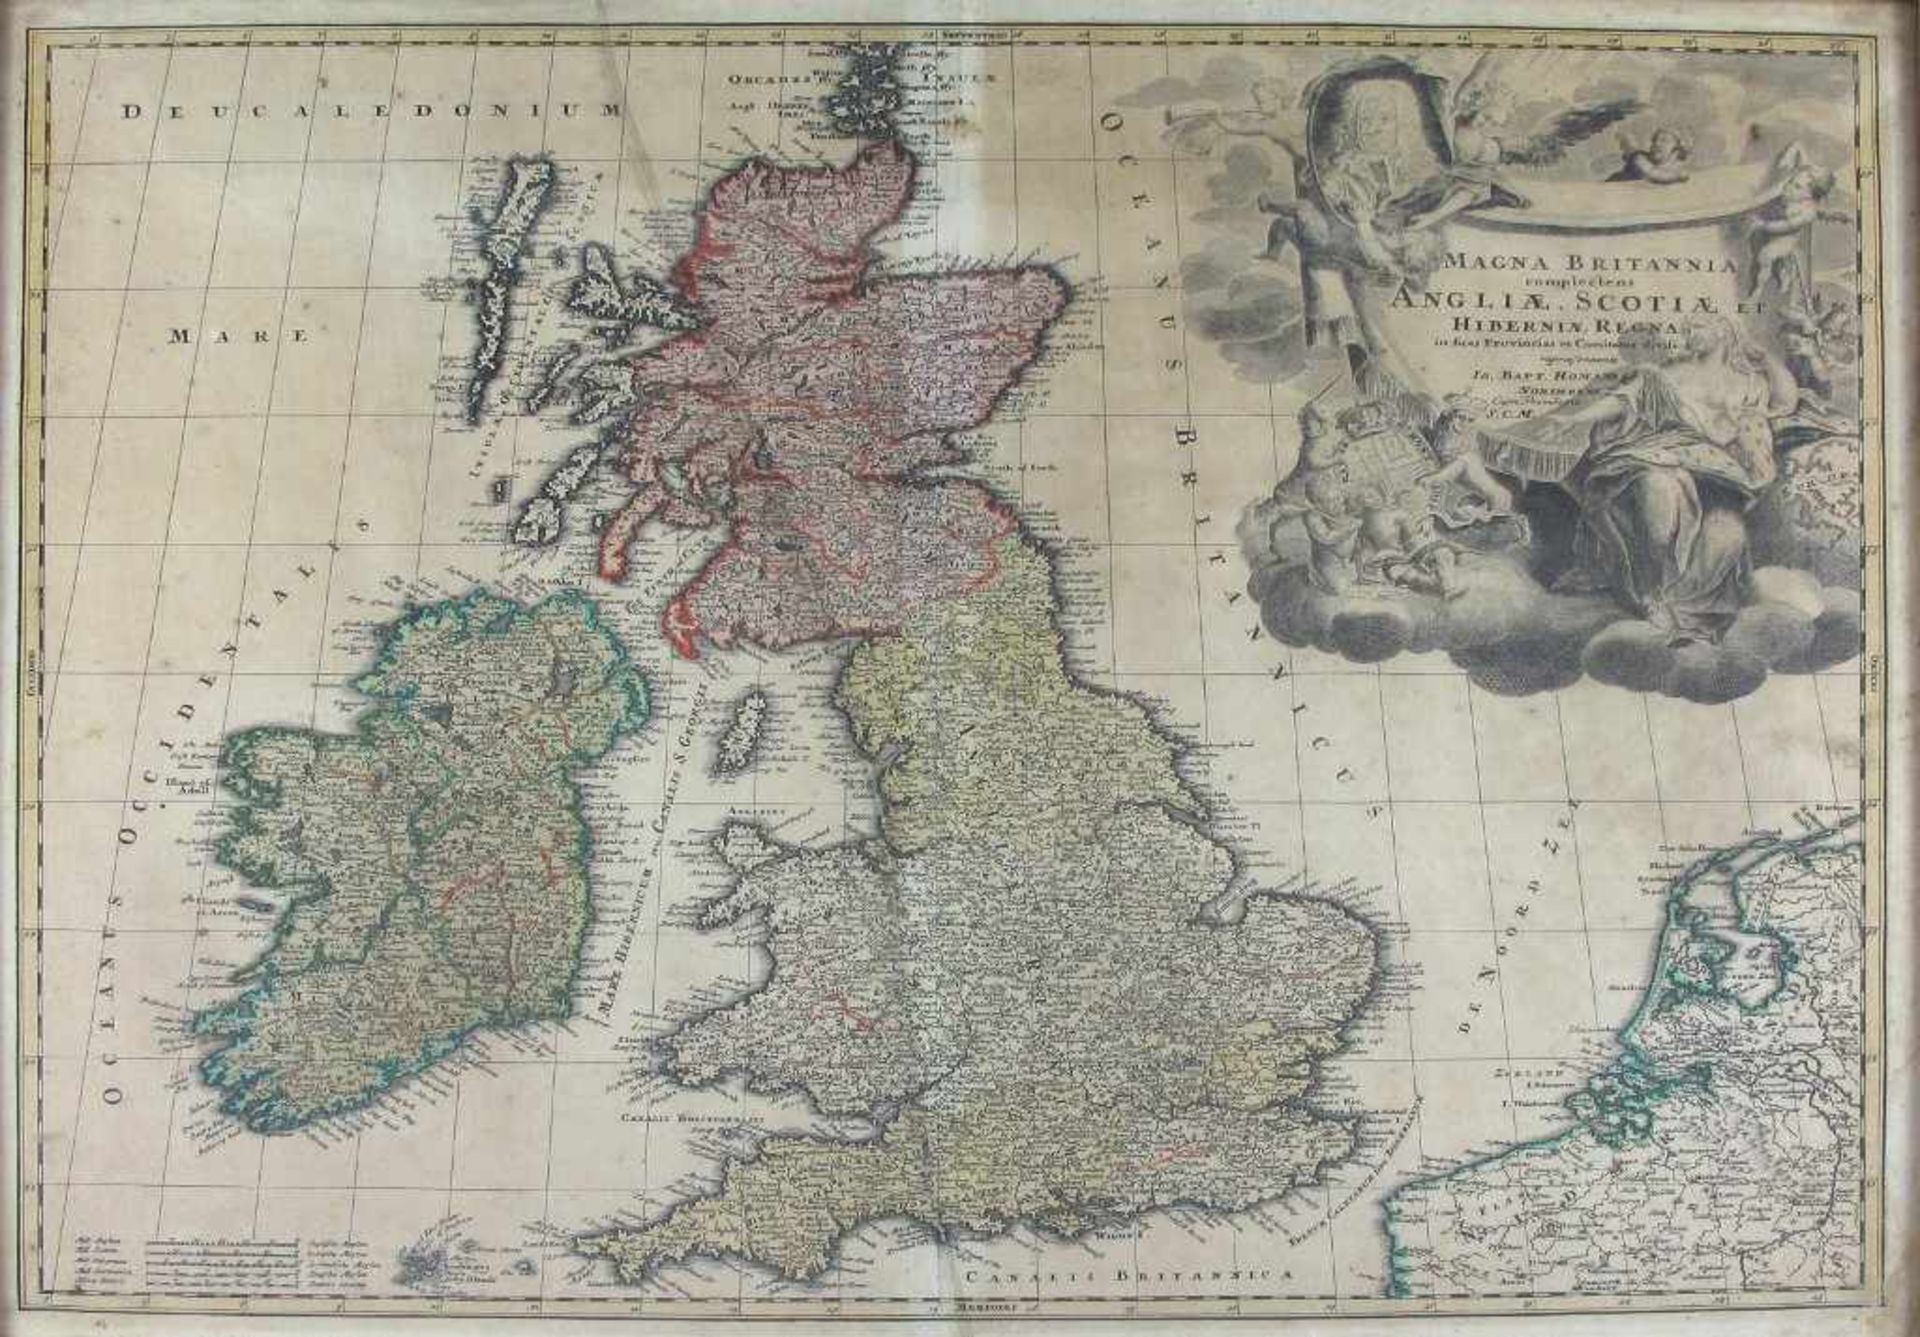 Großbritannien und Irland. In großer Wappenkartusche mit Göttin Europa und Putten: "Magna